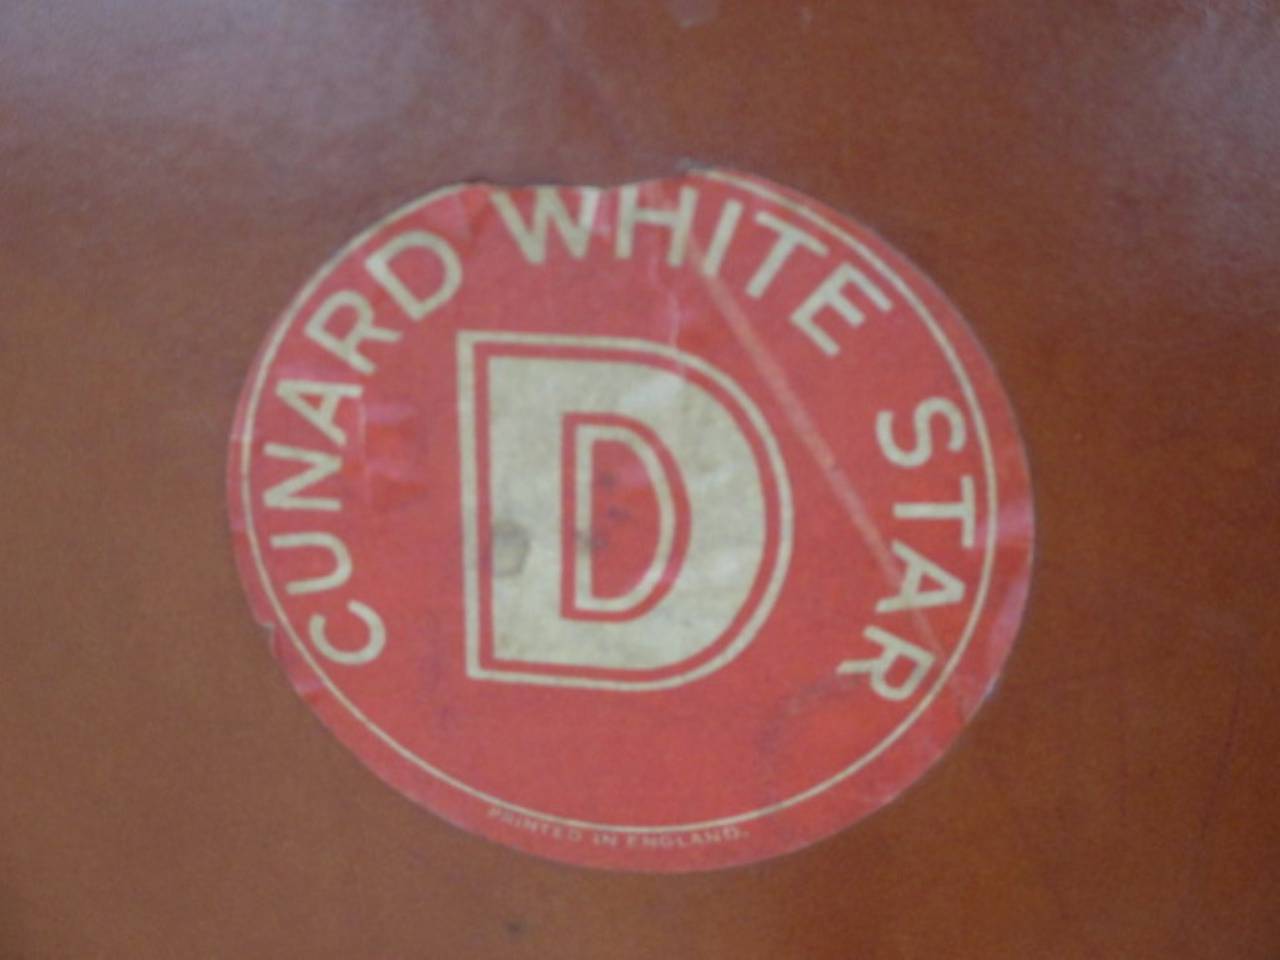 Très rare valise en cuir marron des années 30 avec 2 sangles en cuir et sur les deux côtés
étiquettes d'expédition Cunard White star.
L'intérieur est en tissu écossais avec du cuir, les serrures sont bonnes mais sans clés.
Les initiales du